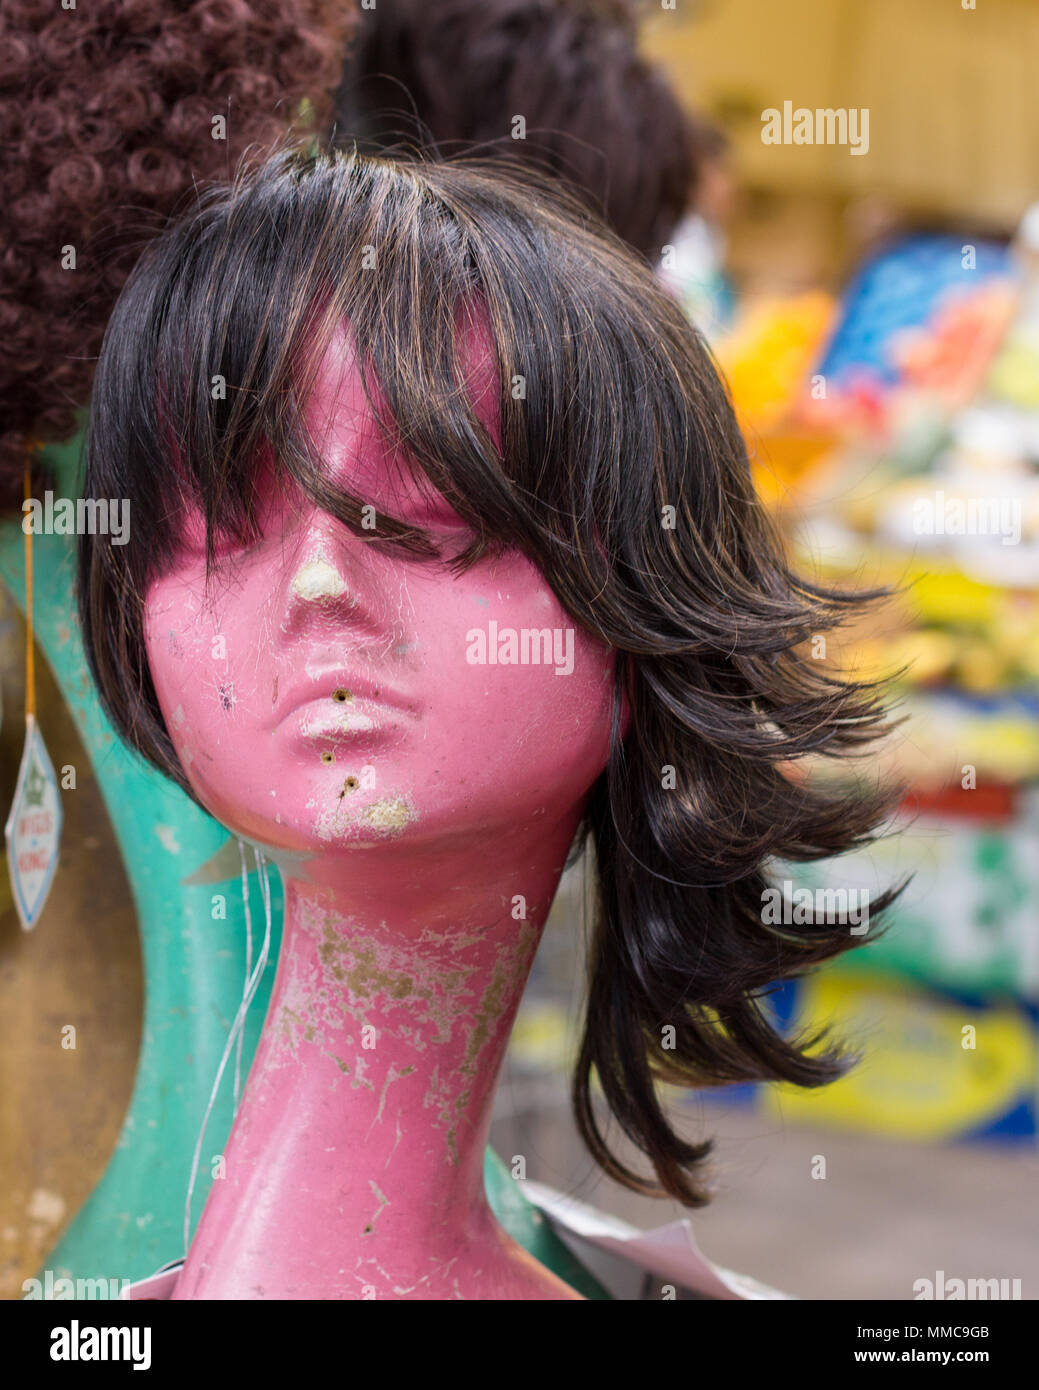 La parrucca appollaiato su un manichino femminile in testa la store window display di Brixton mercato coperto ladies' di moda capelli business di alimentazione, Londra, Regno Unito. Foto Stock